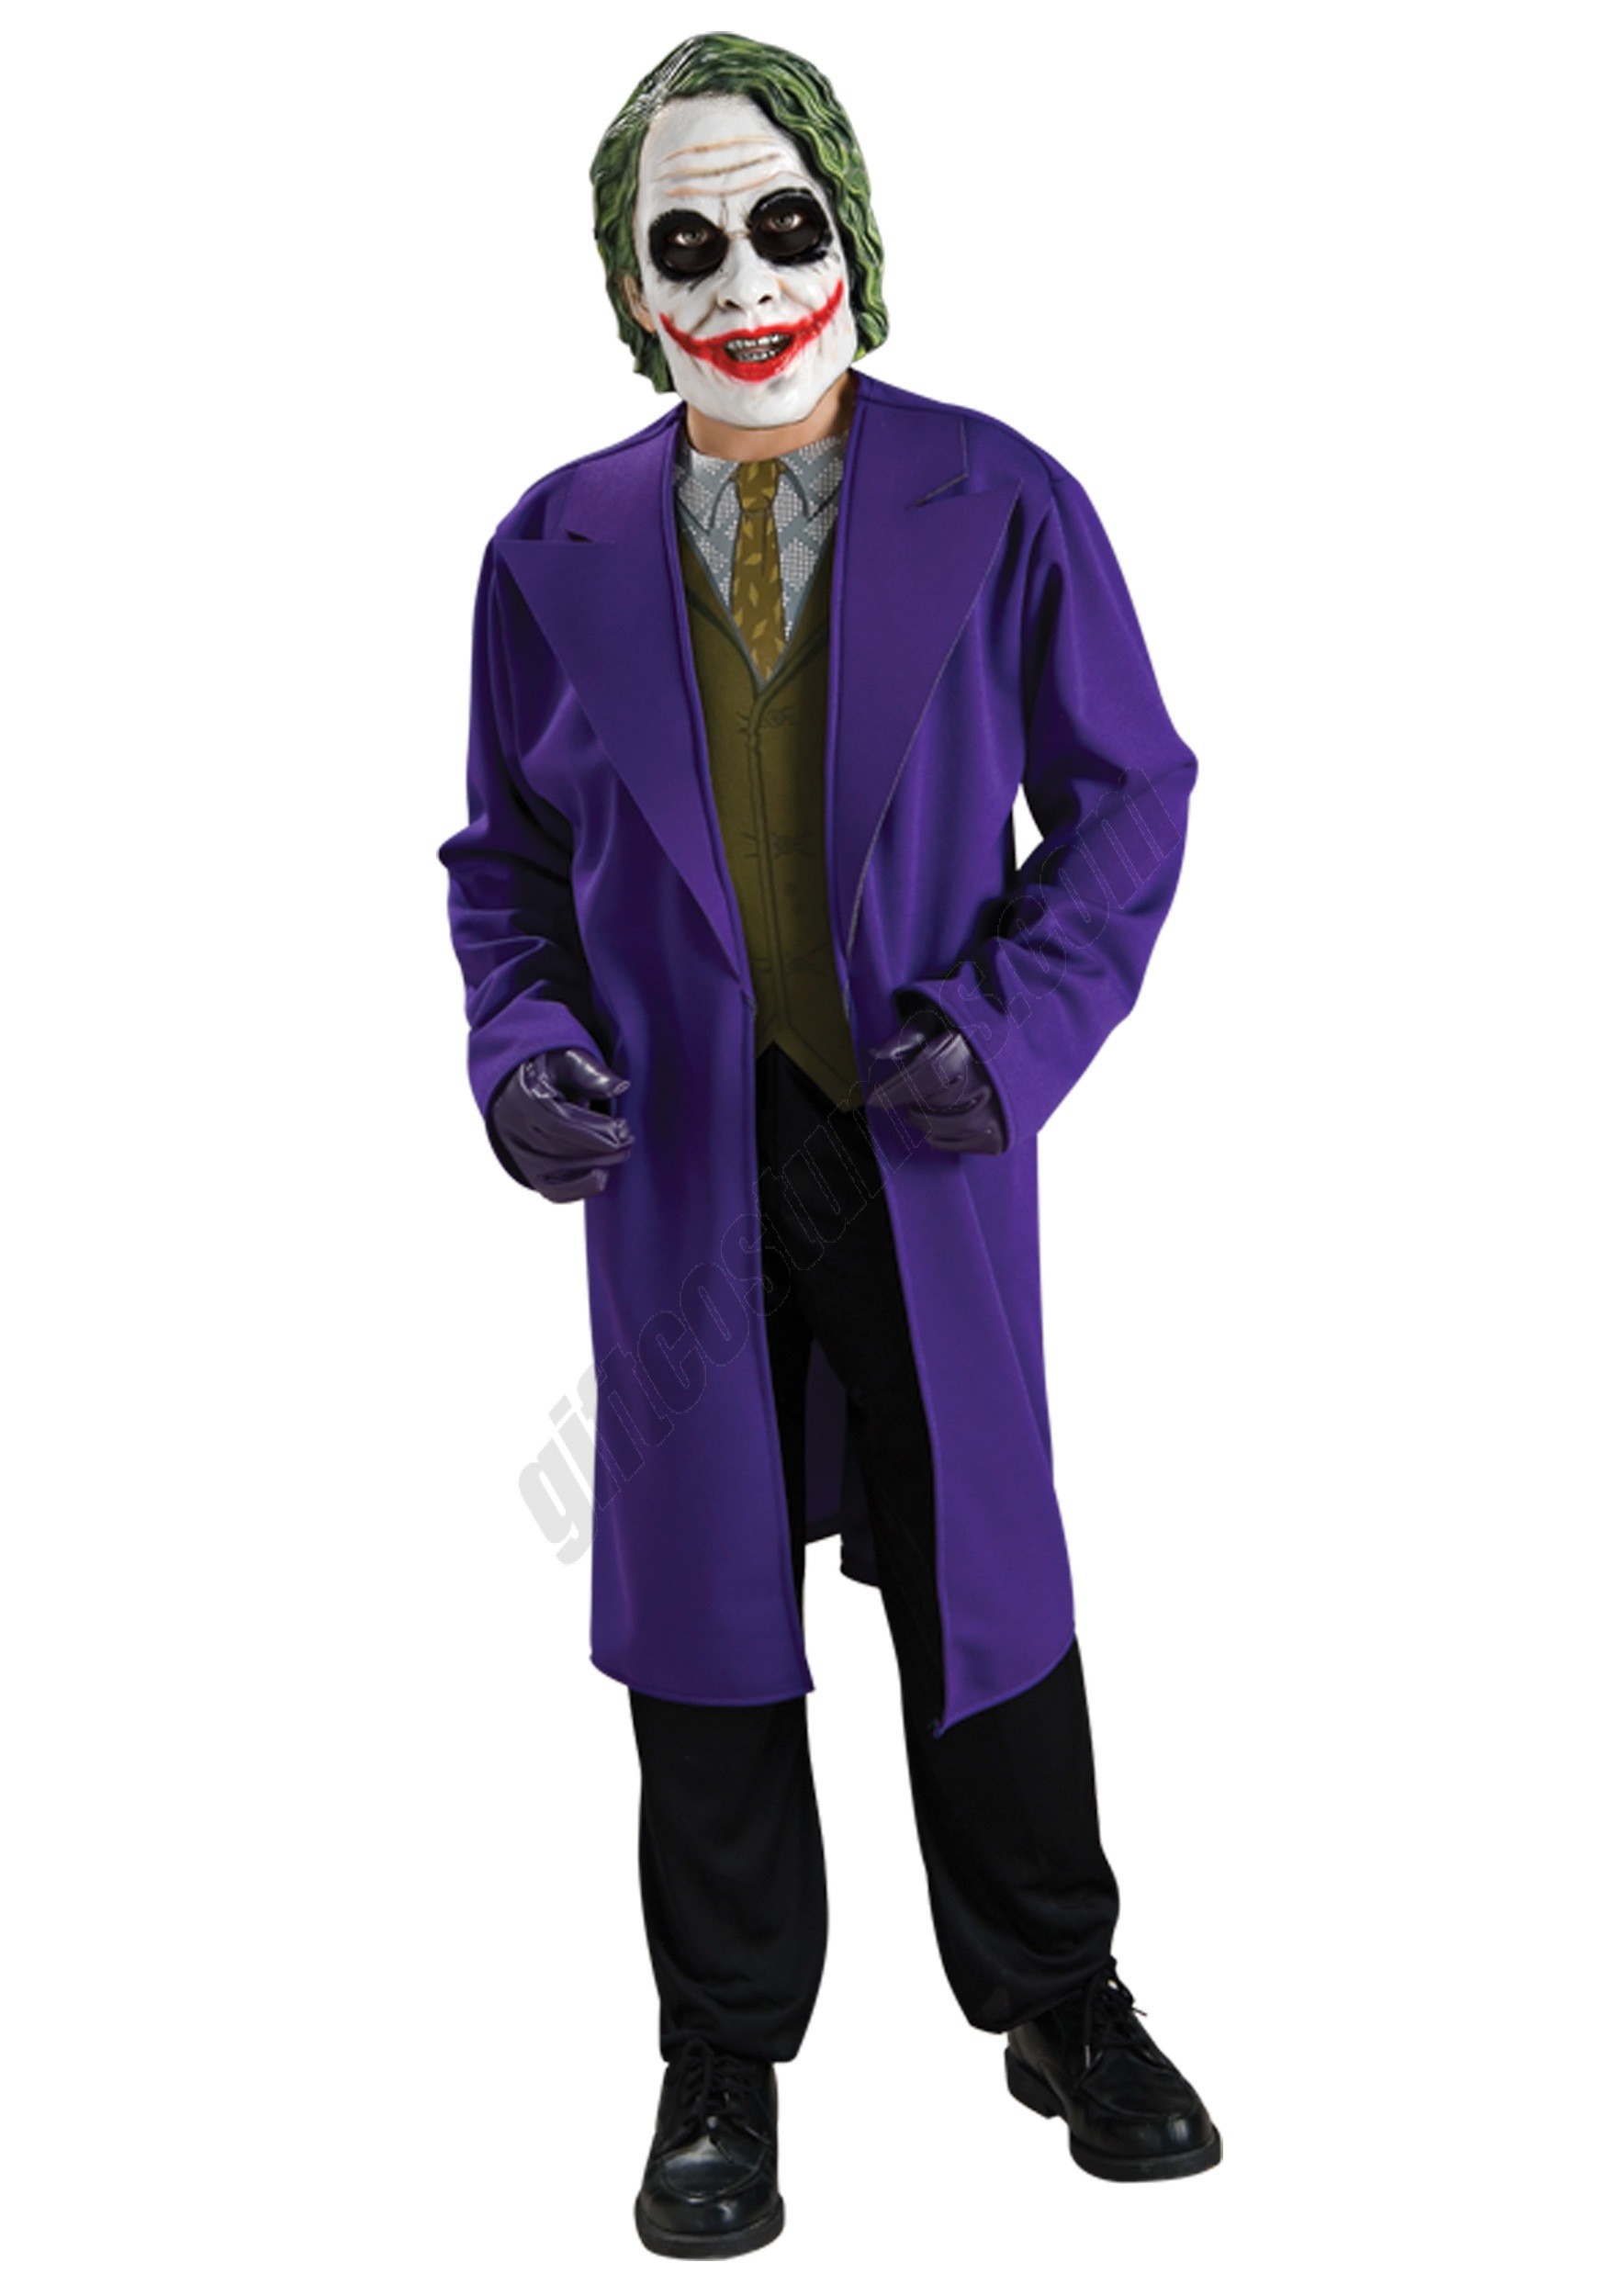 Tween Joker Costume Promotions - Tween Joker Costume Promotions